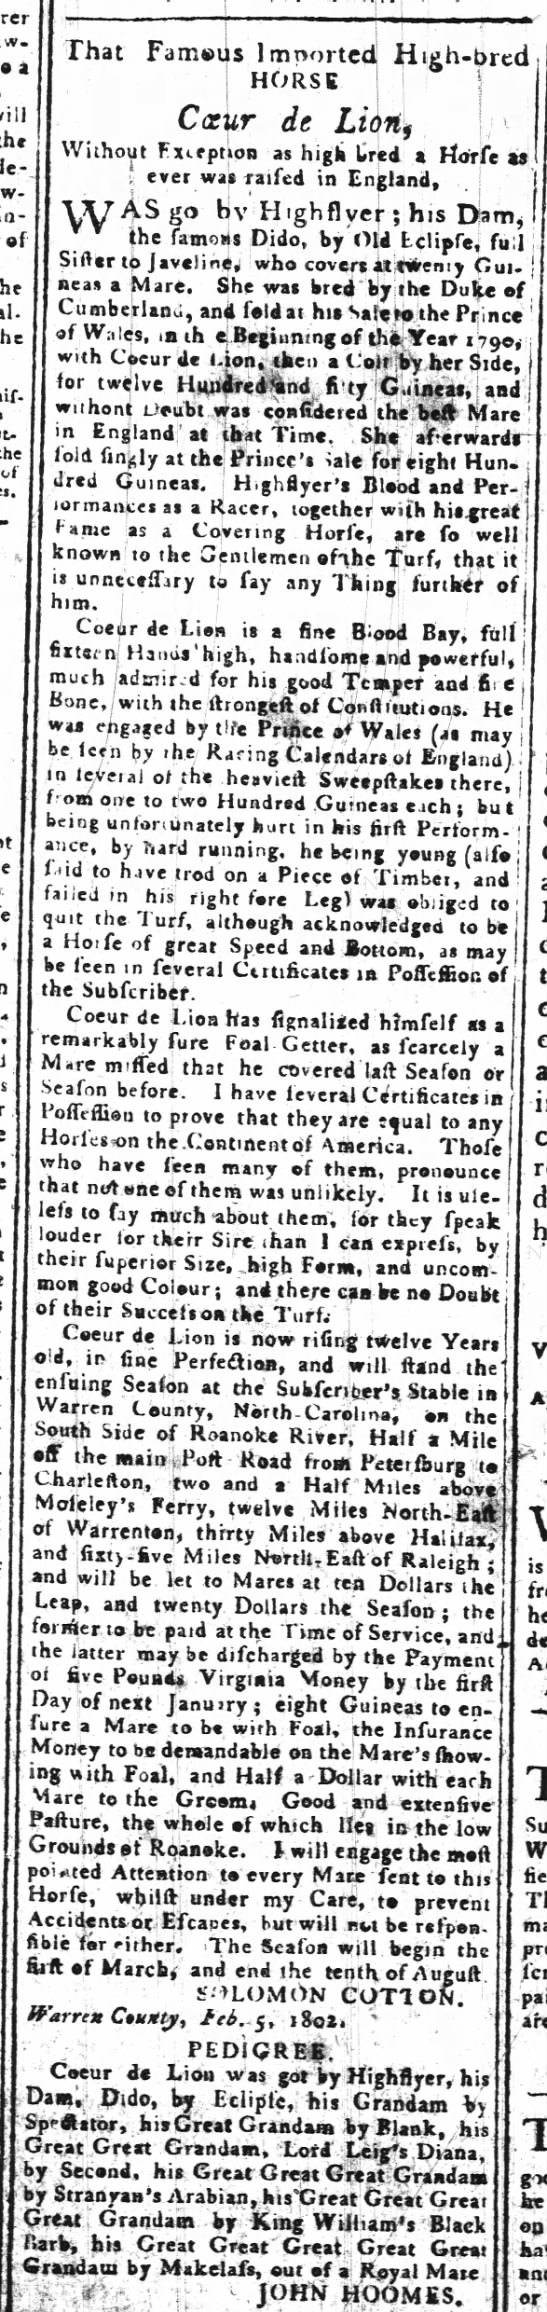 23 Mar 1802, Weekly Raleigh Register, Raleigh, NC - 